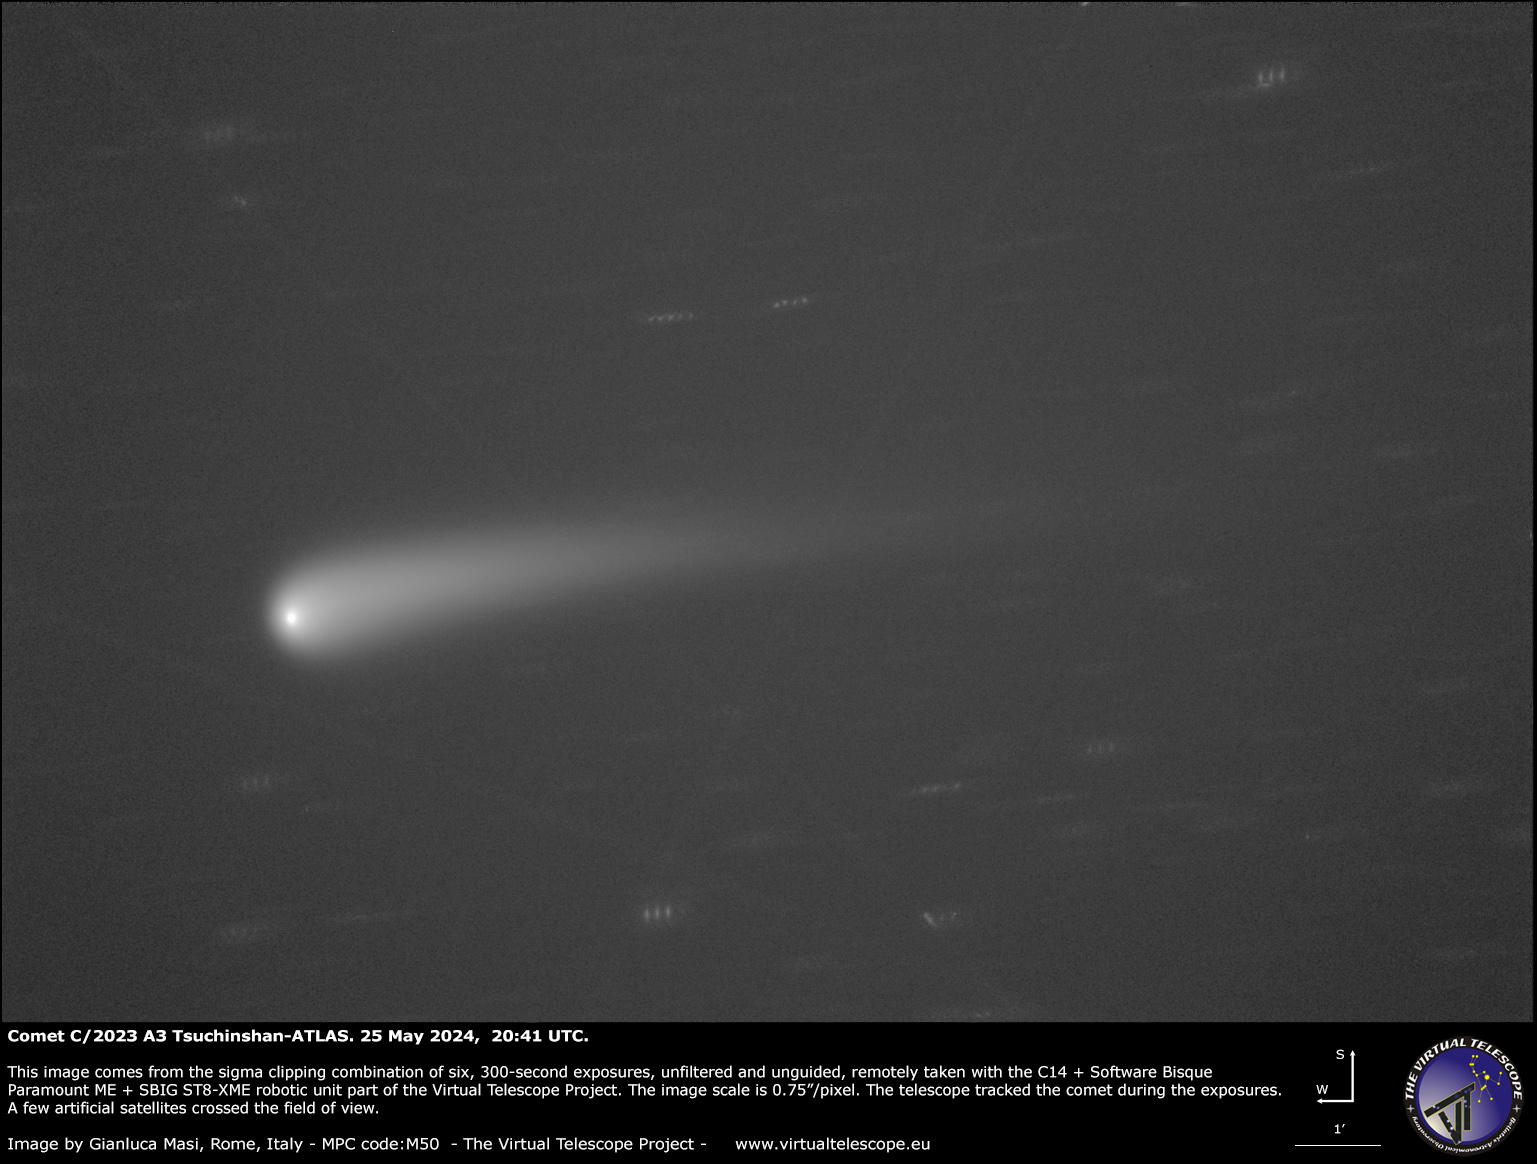 Cometa C/2023 A3 Tuchinshan-ATLAS: Nueva imagen – 25 de mayo de 2024.